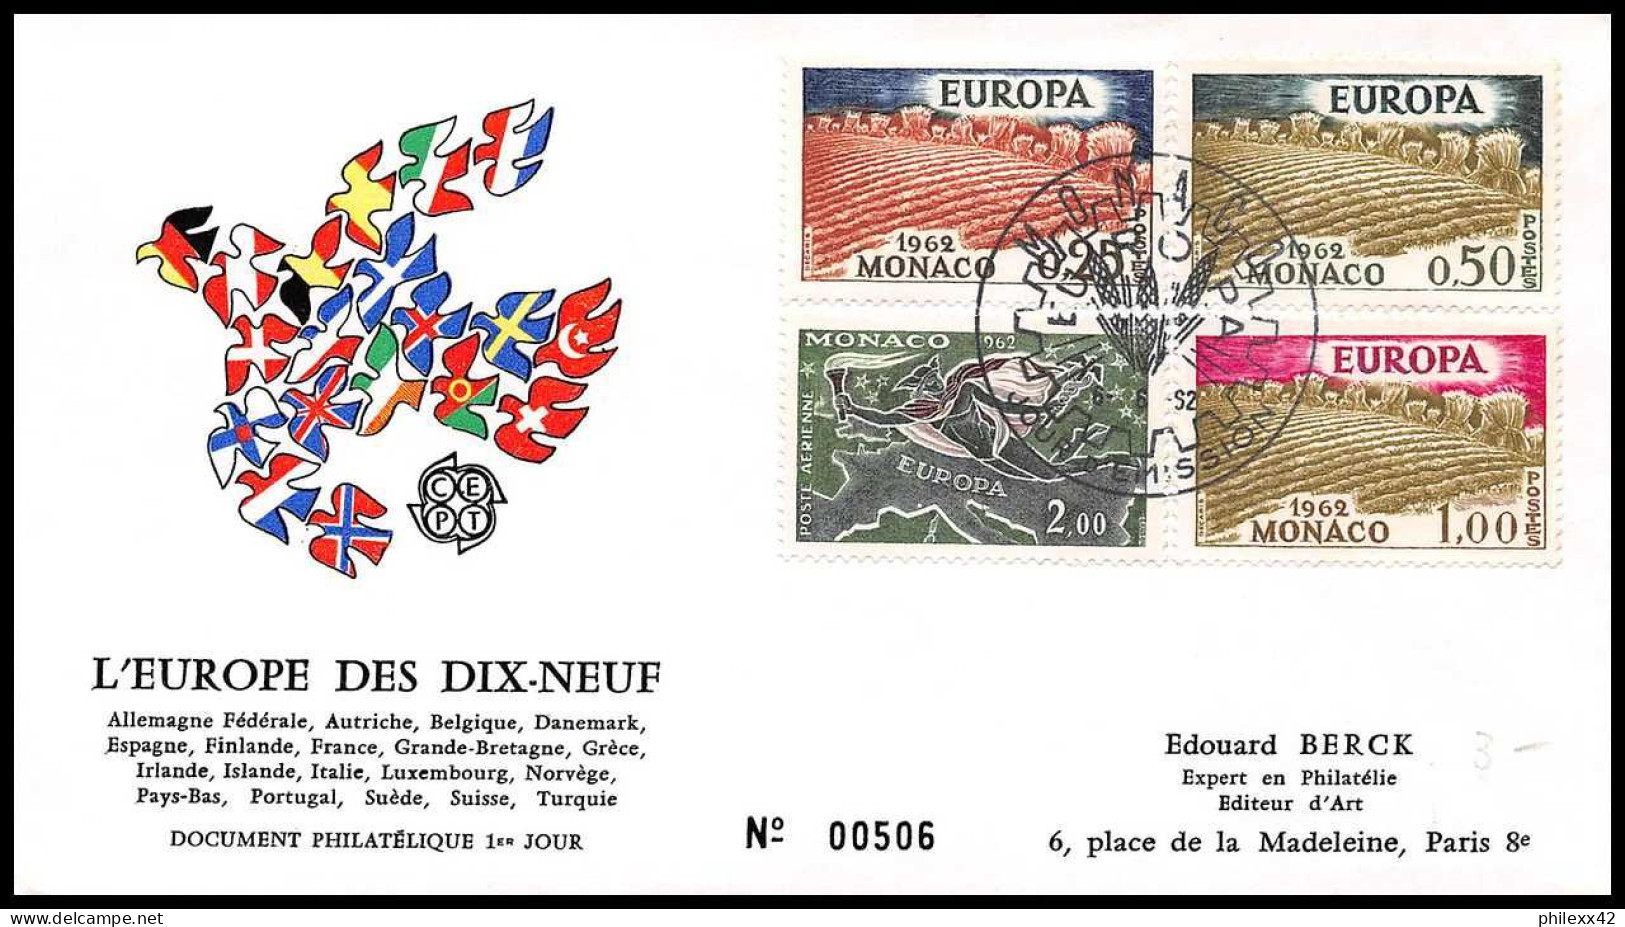 12903 Lot De 10 Fdc Premier Jour Europa 1965/1973 Fdc Premier Jour Monaco Lettre Cover - Collections, Lots & Séries